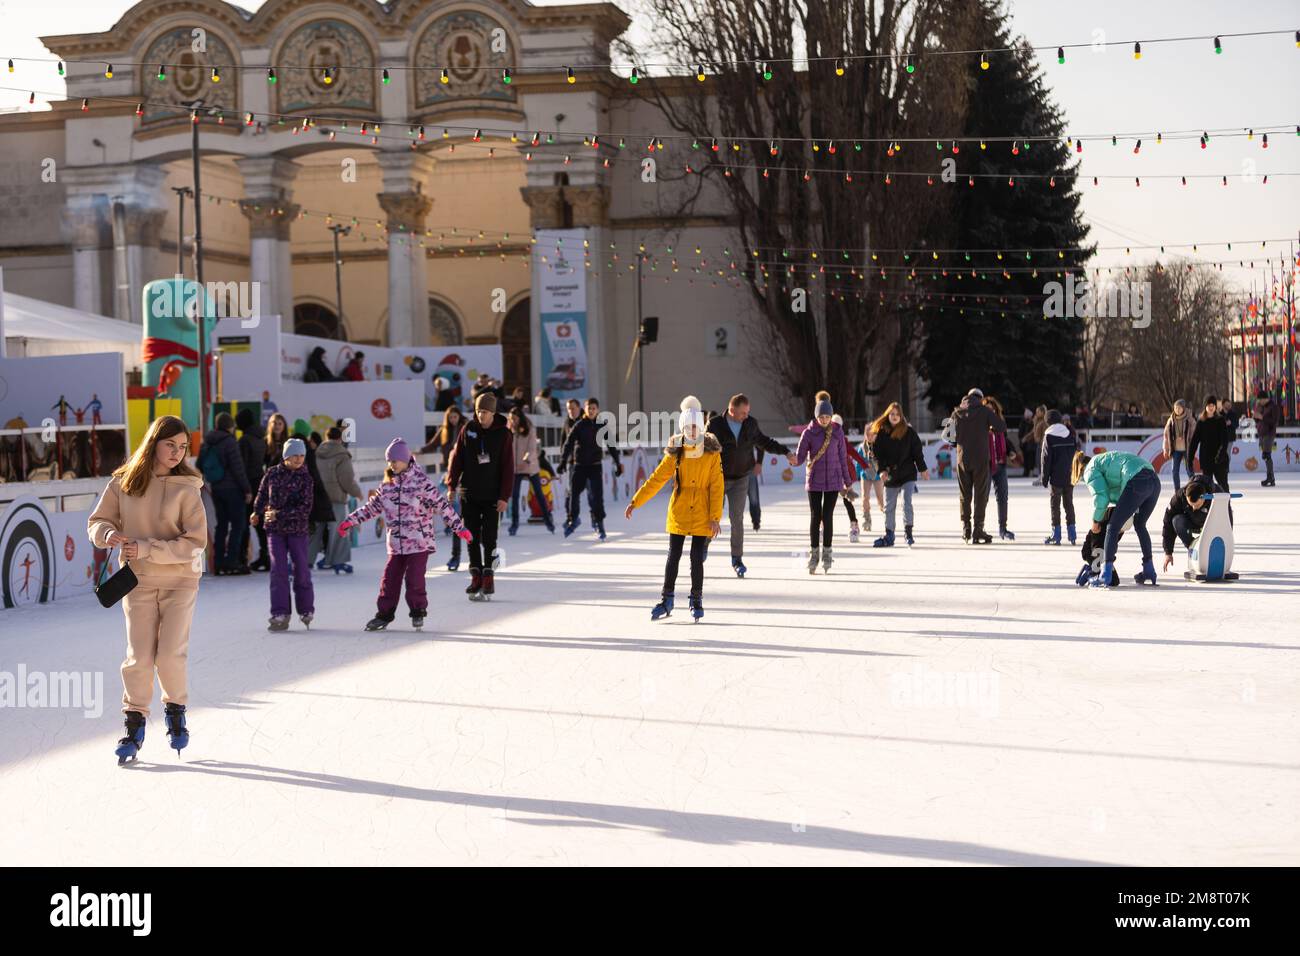 KIEV, UKRAINE - 2 janvier 2023 : patinage sur glace. Les gens s'amusent dans l'arène de glace de la ville. Vacances du nouvel an dans la ville de Kiev. Banque D'Images